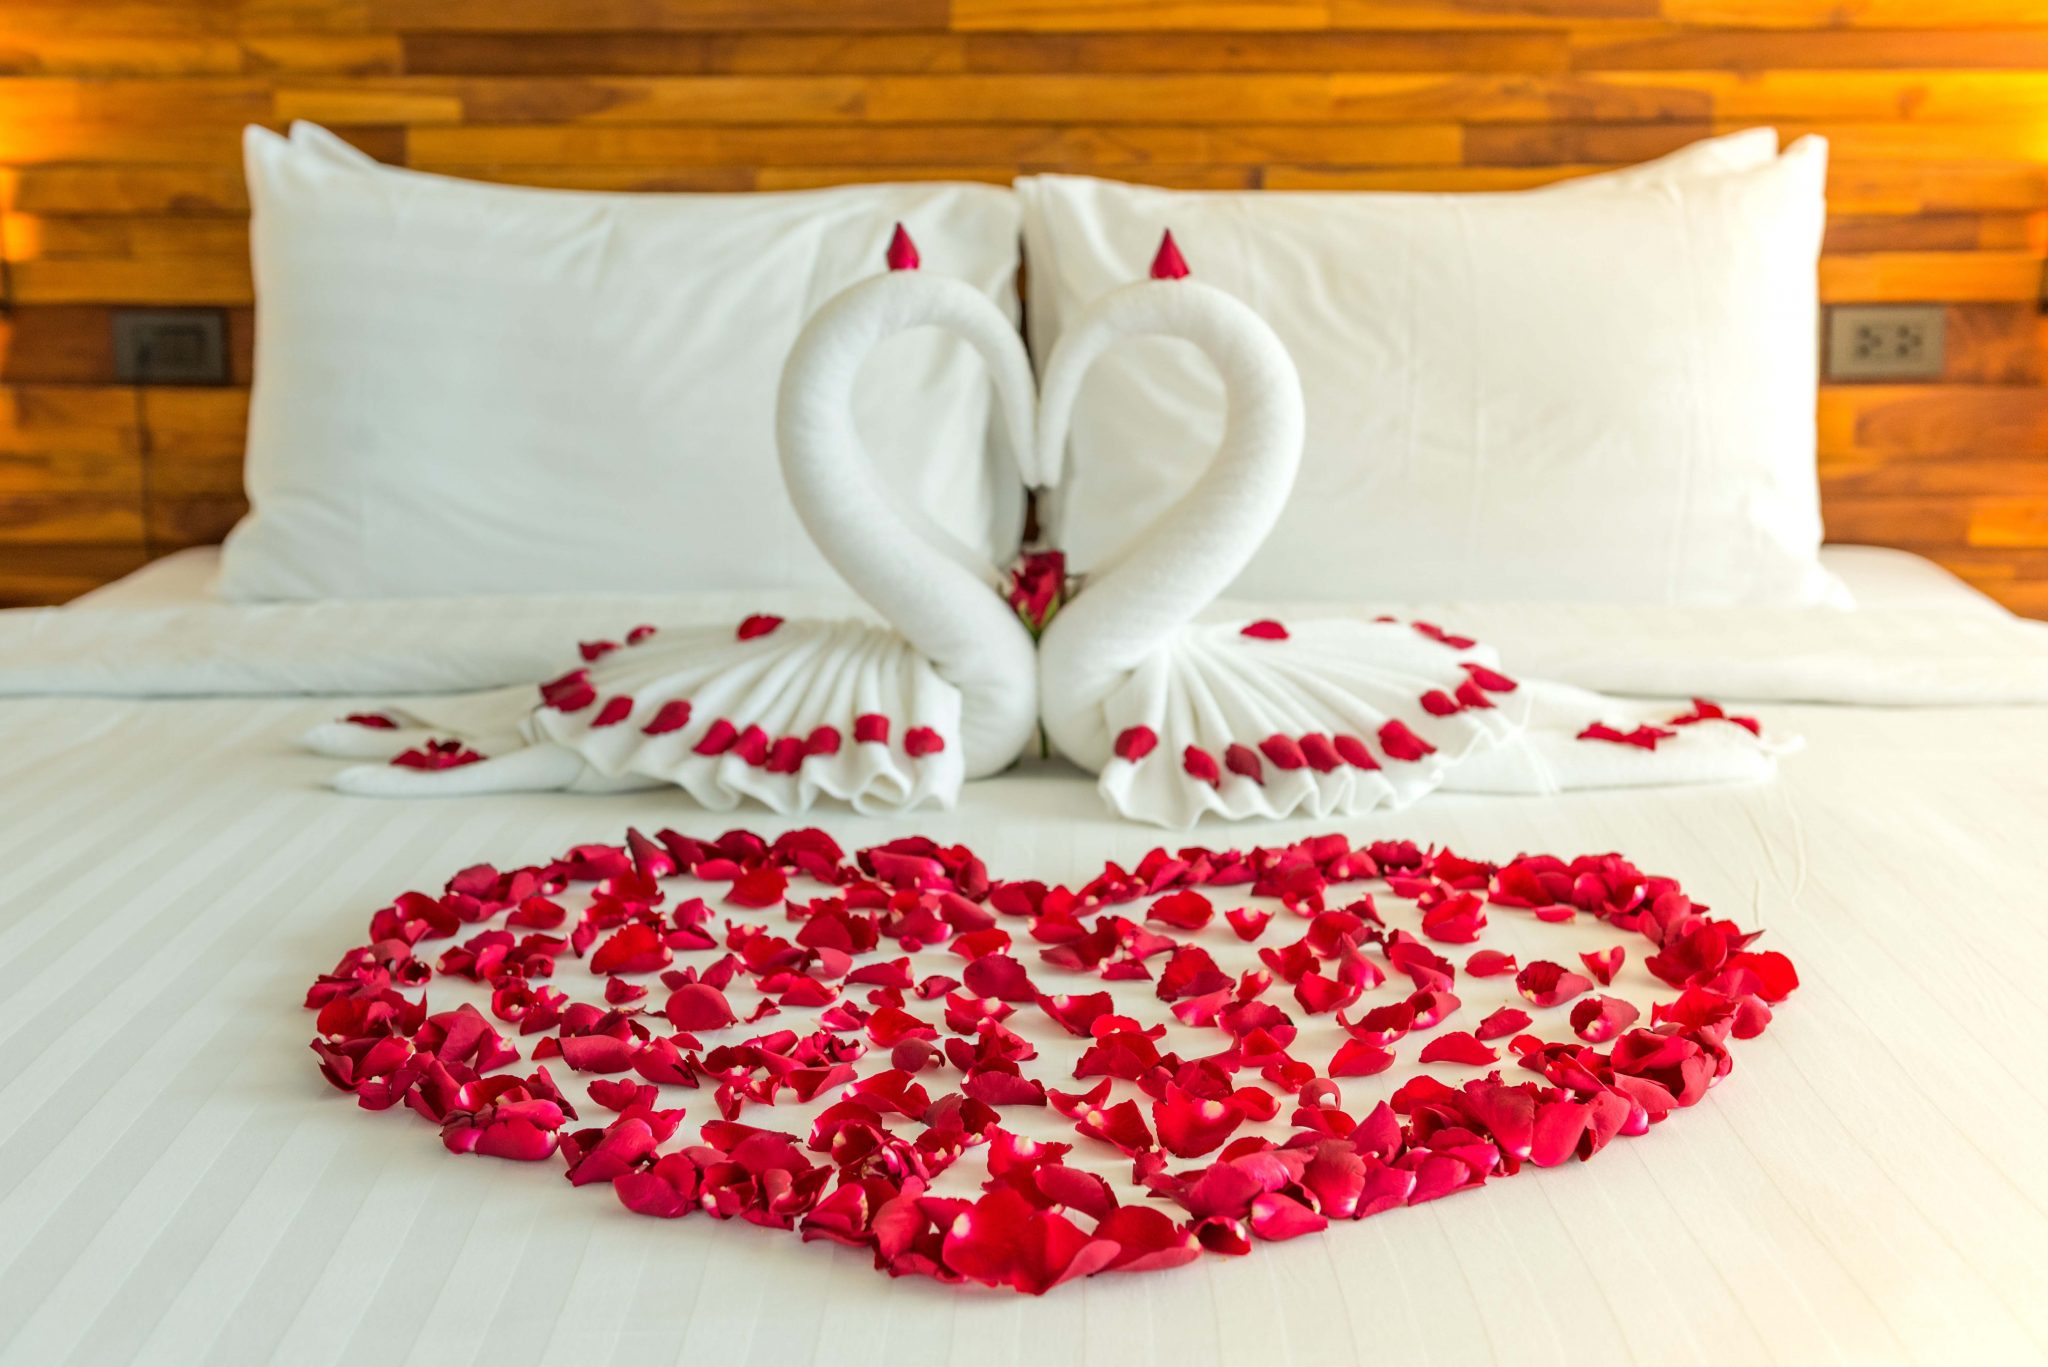 عروض فندق إتش دبي لعيد الحب 2021 خلال شهر فبراير